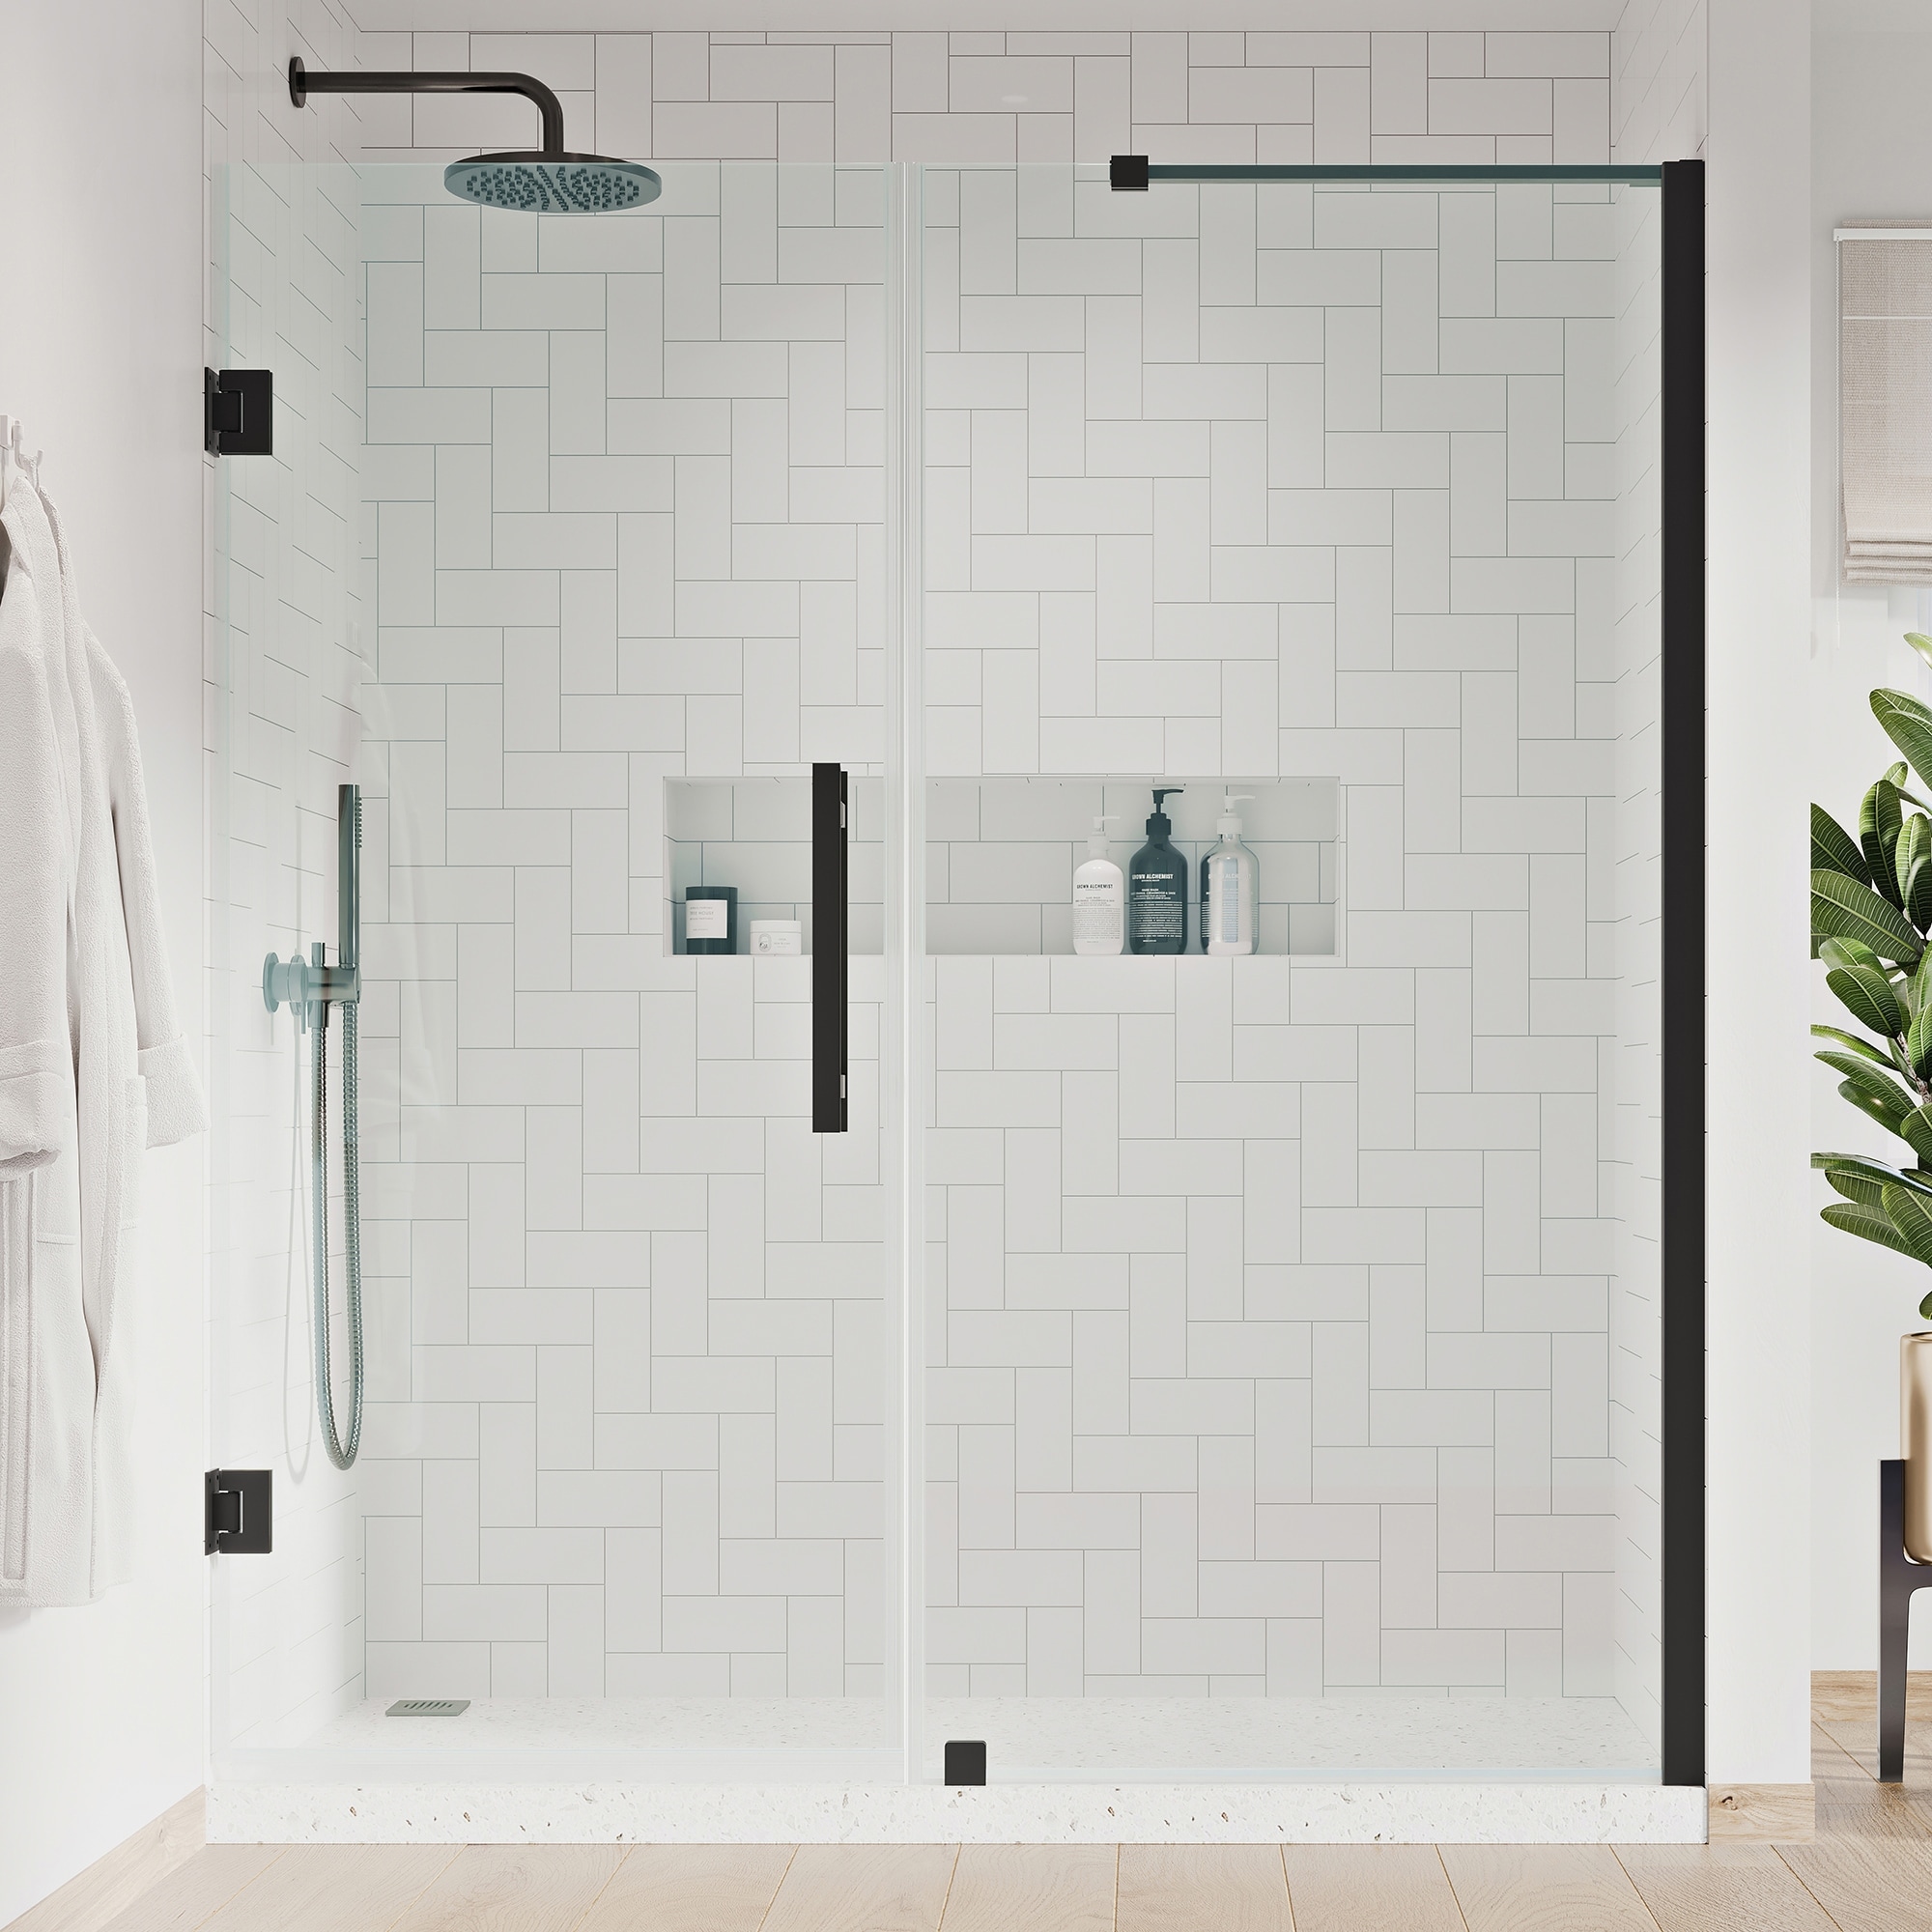 Lordear 37 x 13 Shower Niche Stainless Steel Bathroom Shelf Wall